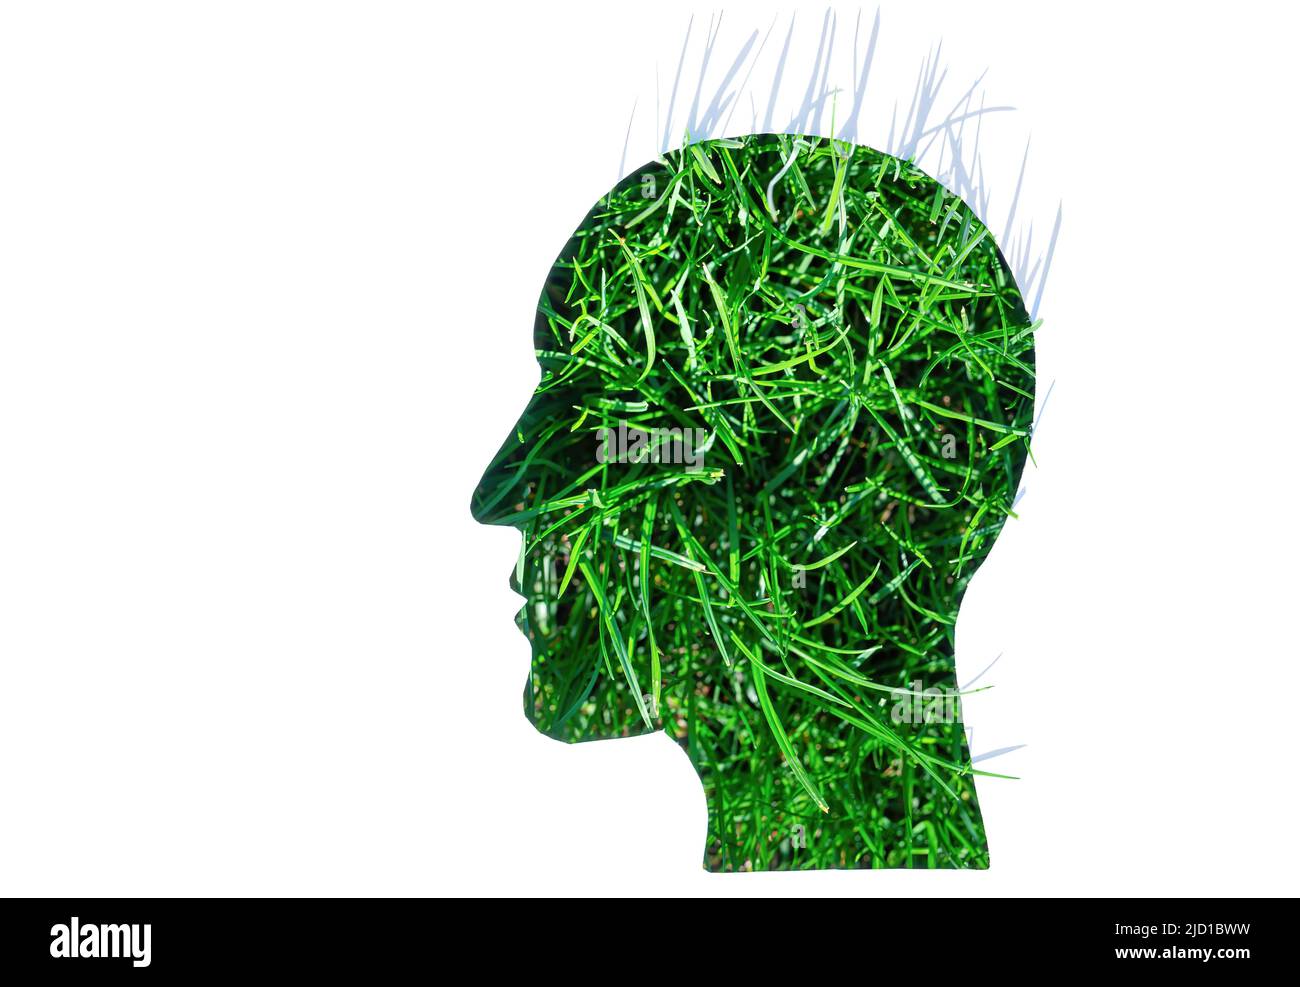 Des lames d'herbe fraîche sont visibles à travers une découpe de papier en forme de tête d'homme avec un espace de copie. Concept de vie durable. Banque D'Images